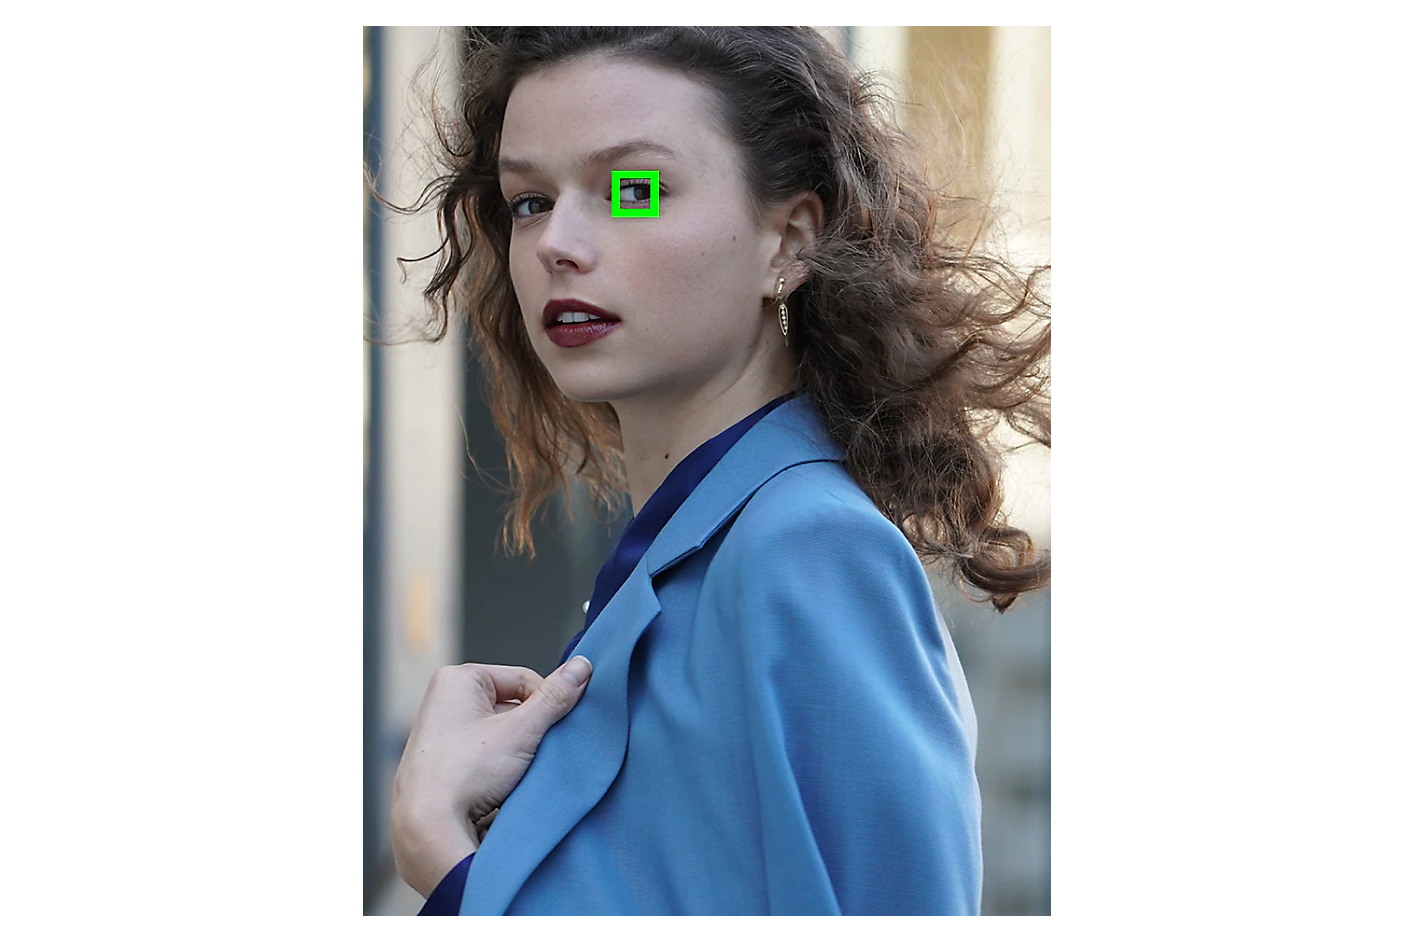 푸른색 재킷을 입고 측면을 바라보는 여성의 한쪽 눈에 잡힌 녹색 프레임.